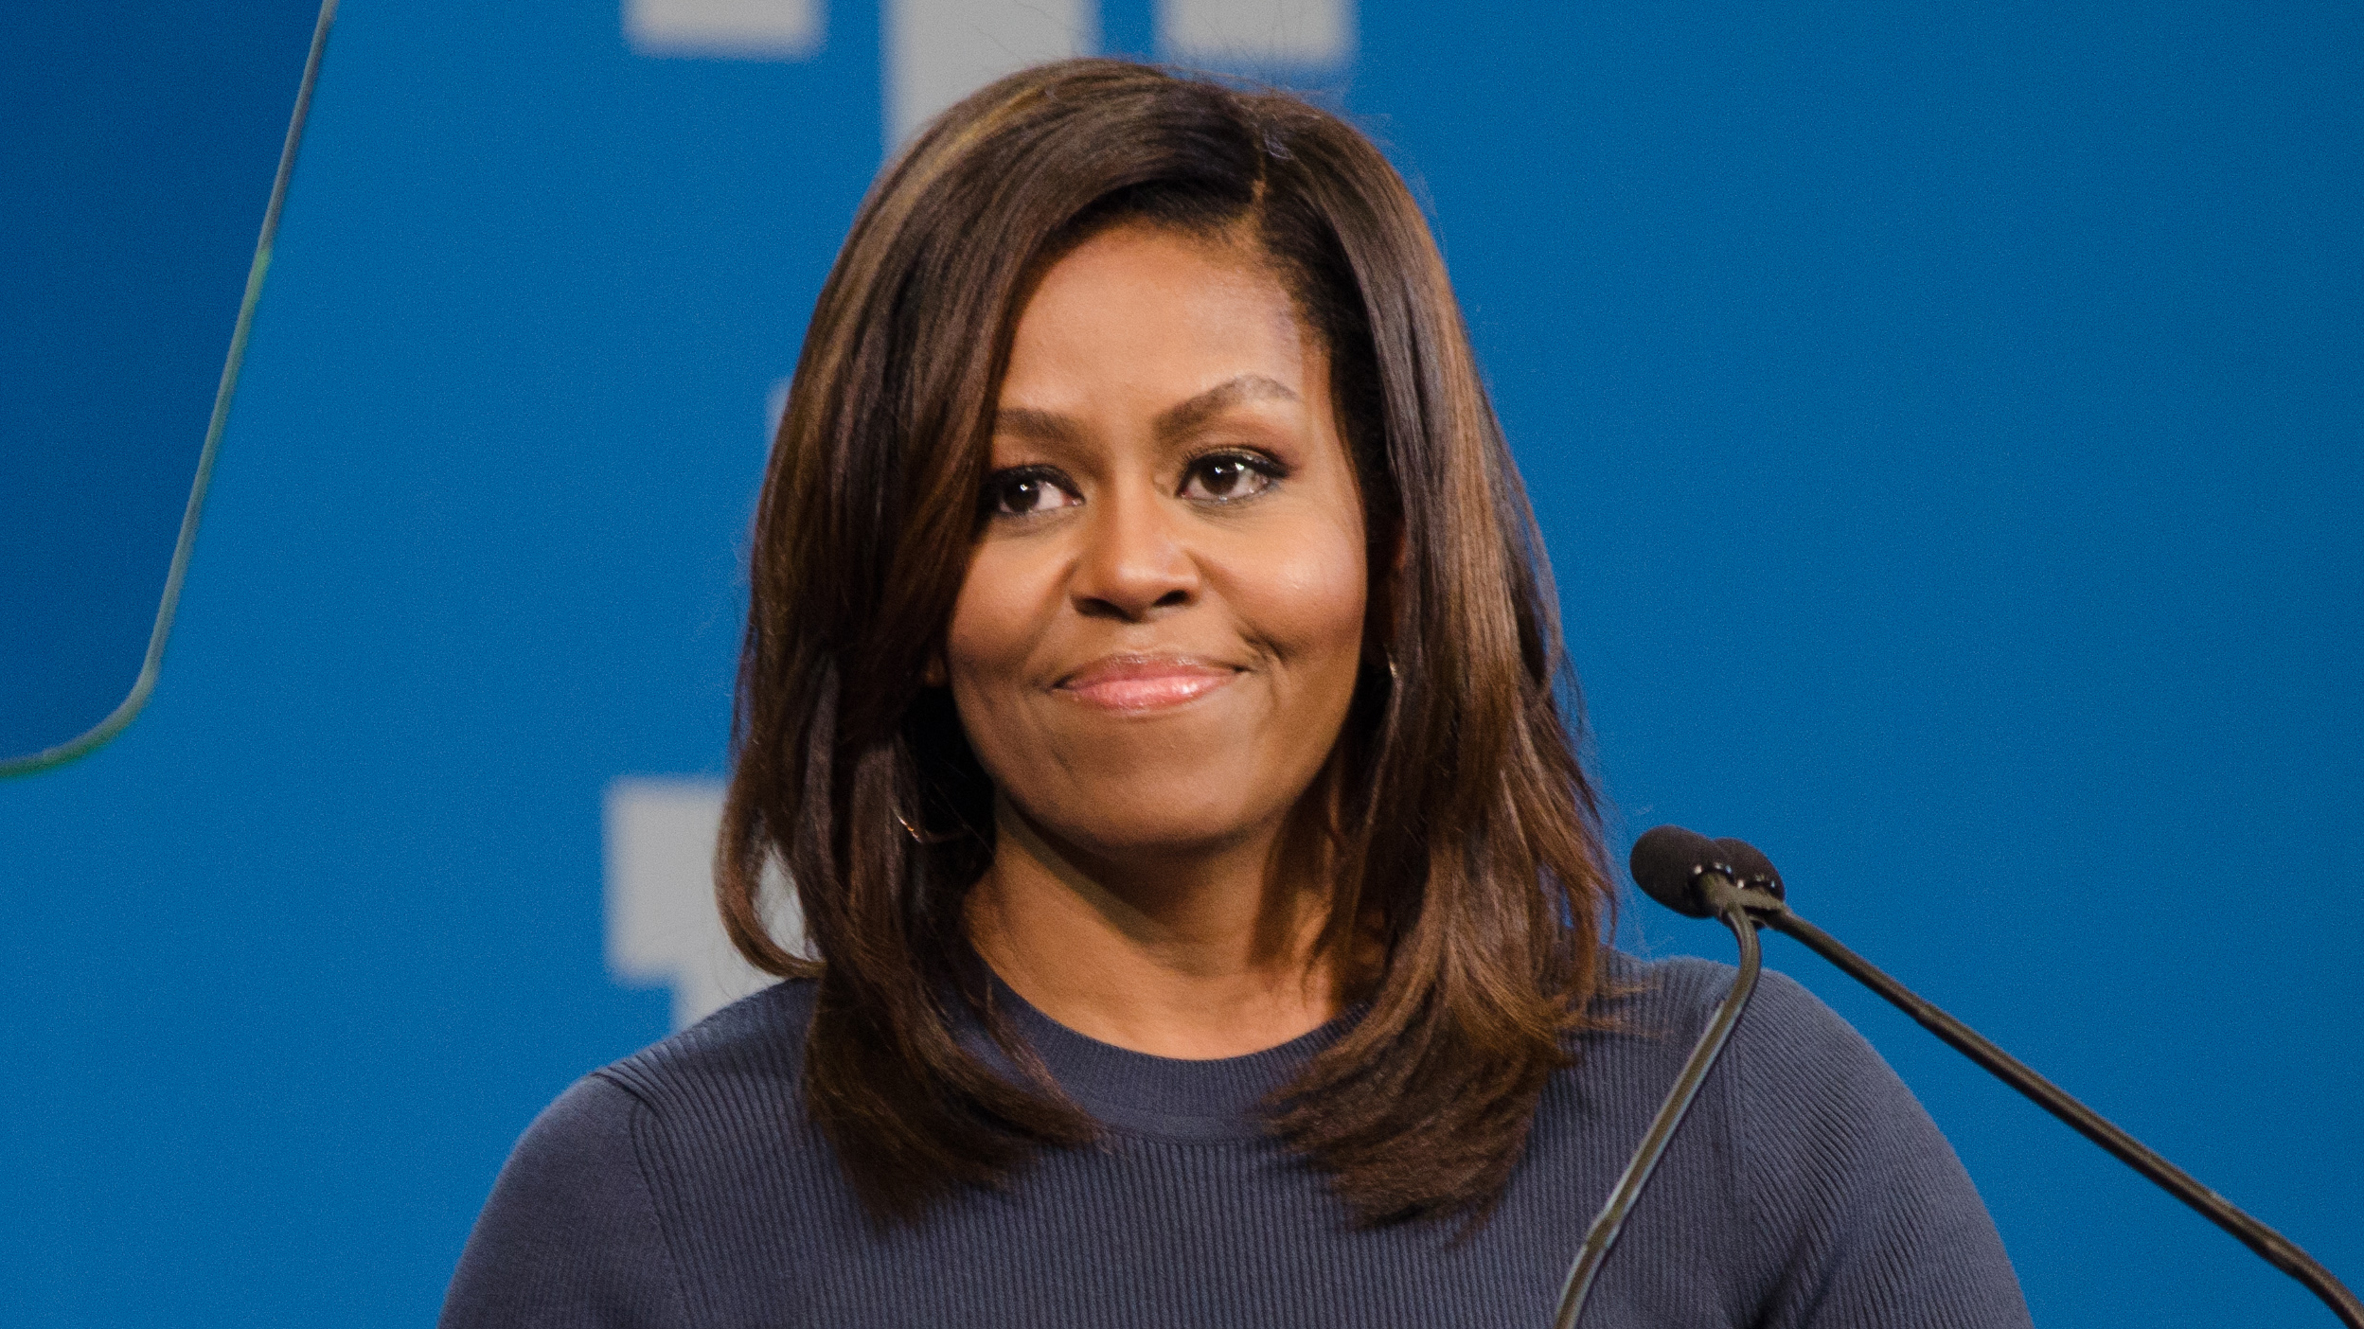 Michelle Obama photo #90201, Michelle Obama image